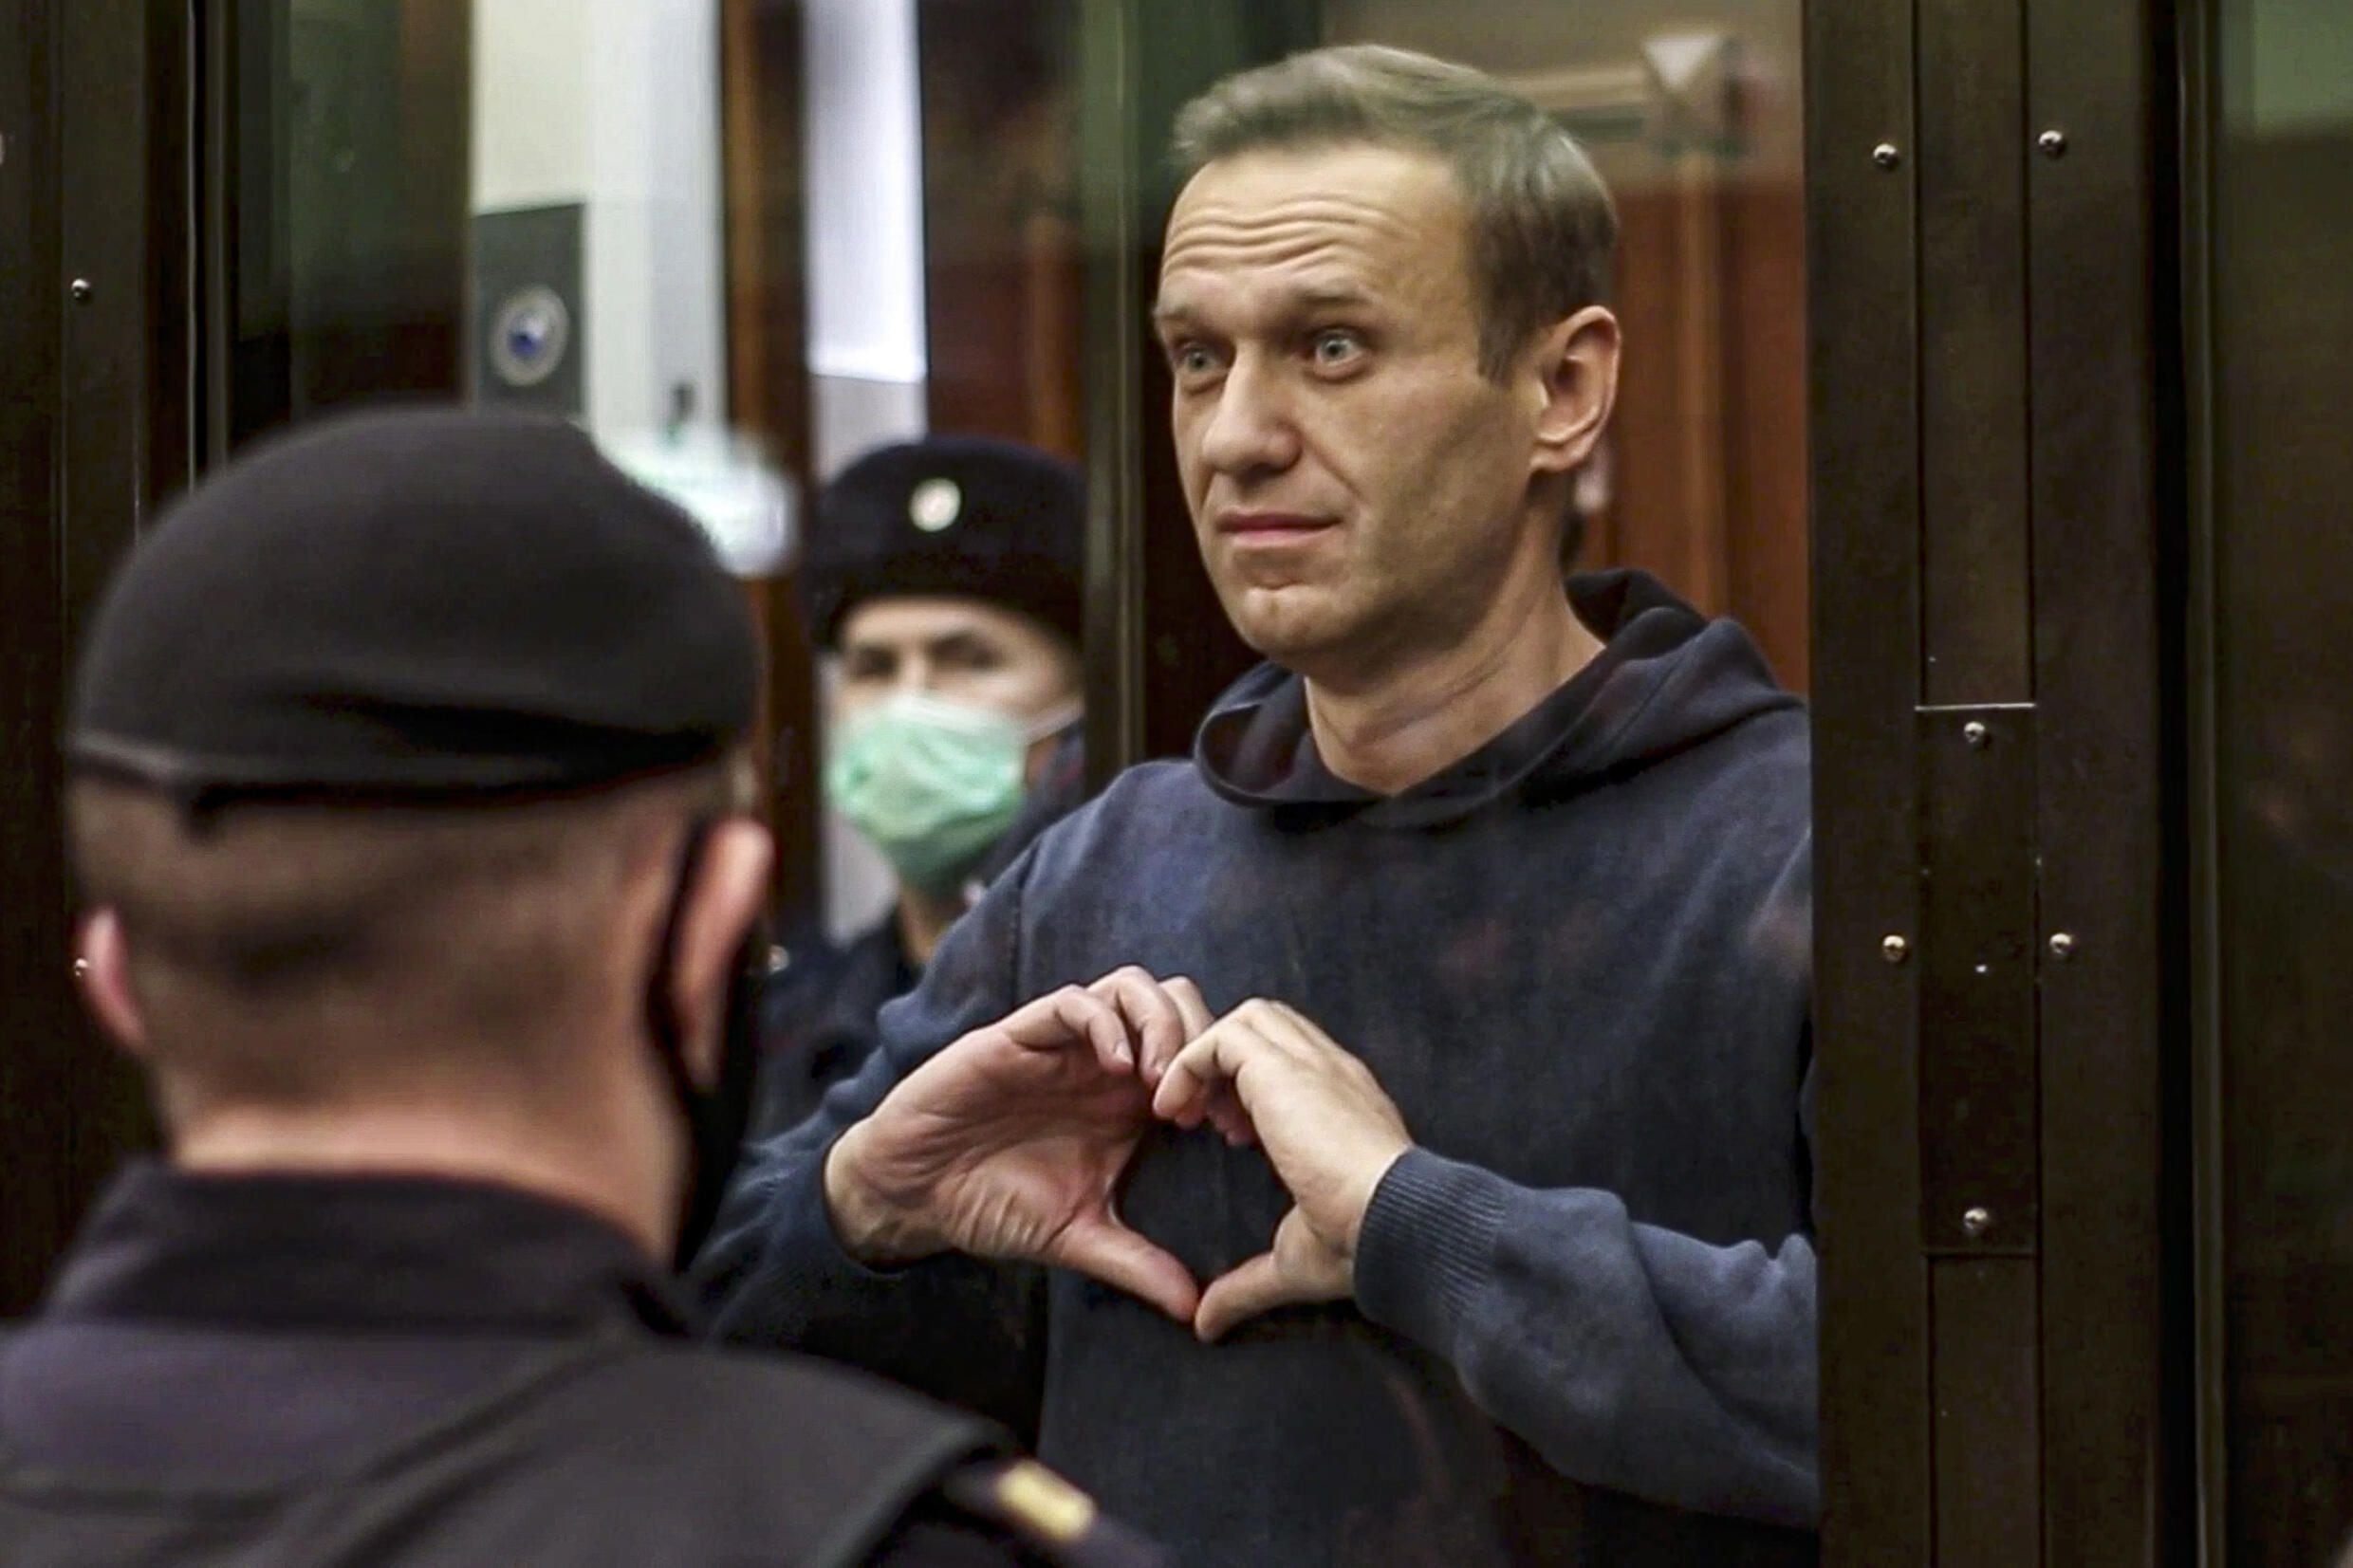 agencias de espionaje de ee.uu.: putin no ordenó directamente la muerte de navalny en febrero